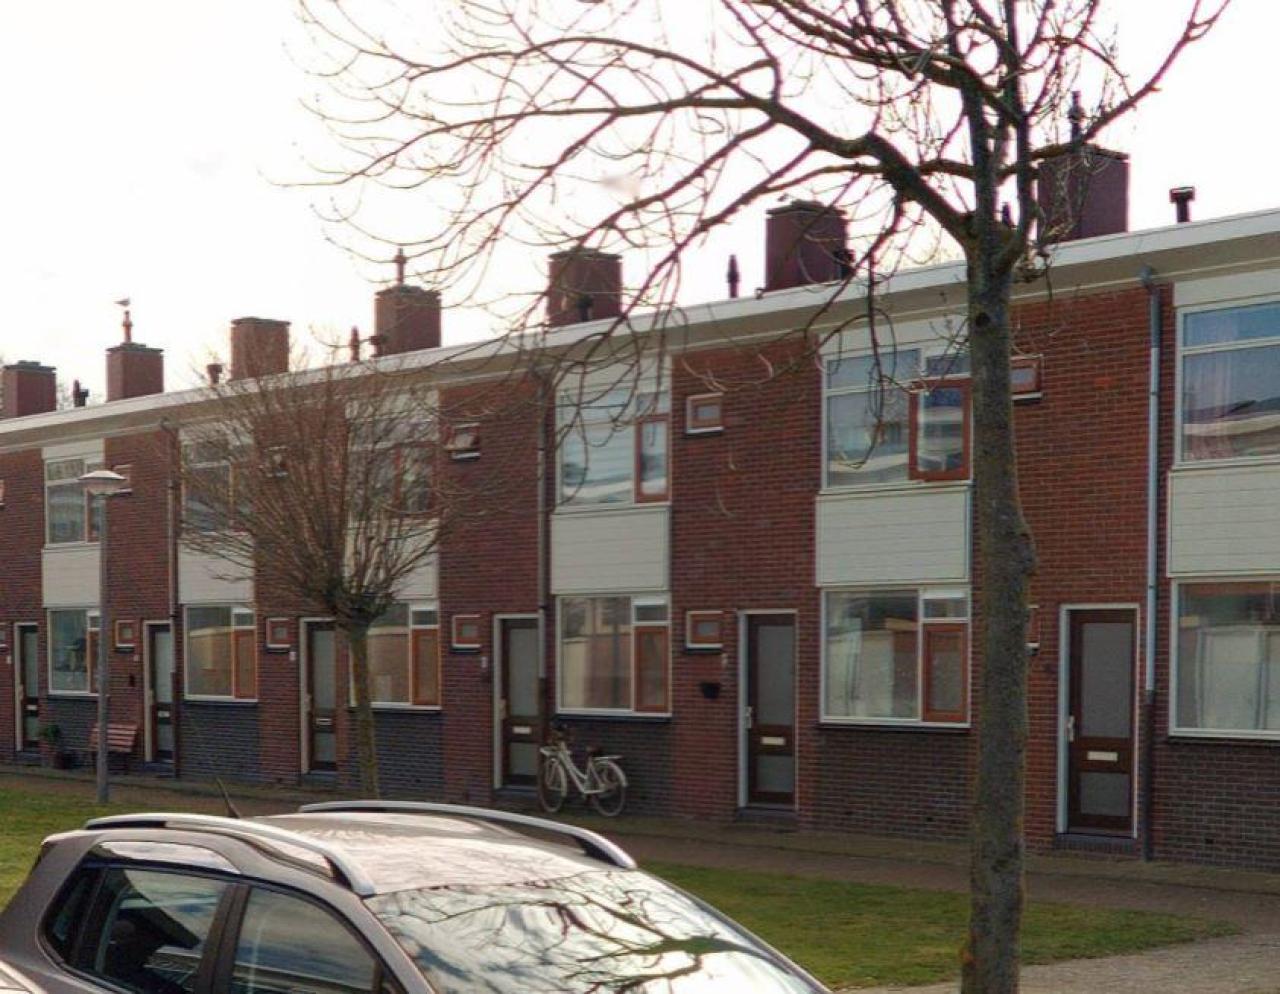 Zijlstraat 10, 1784 TN Den Helder, Nederland